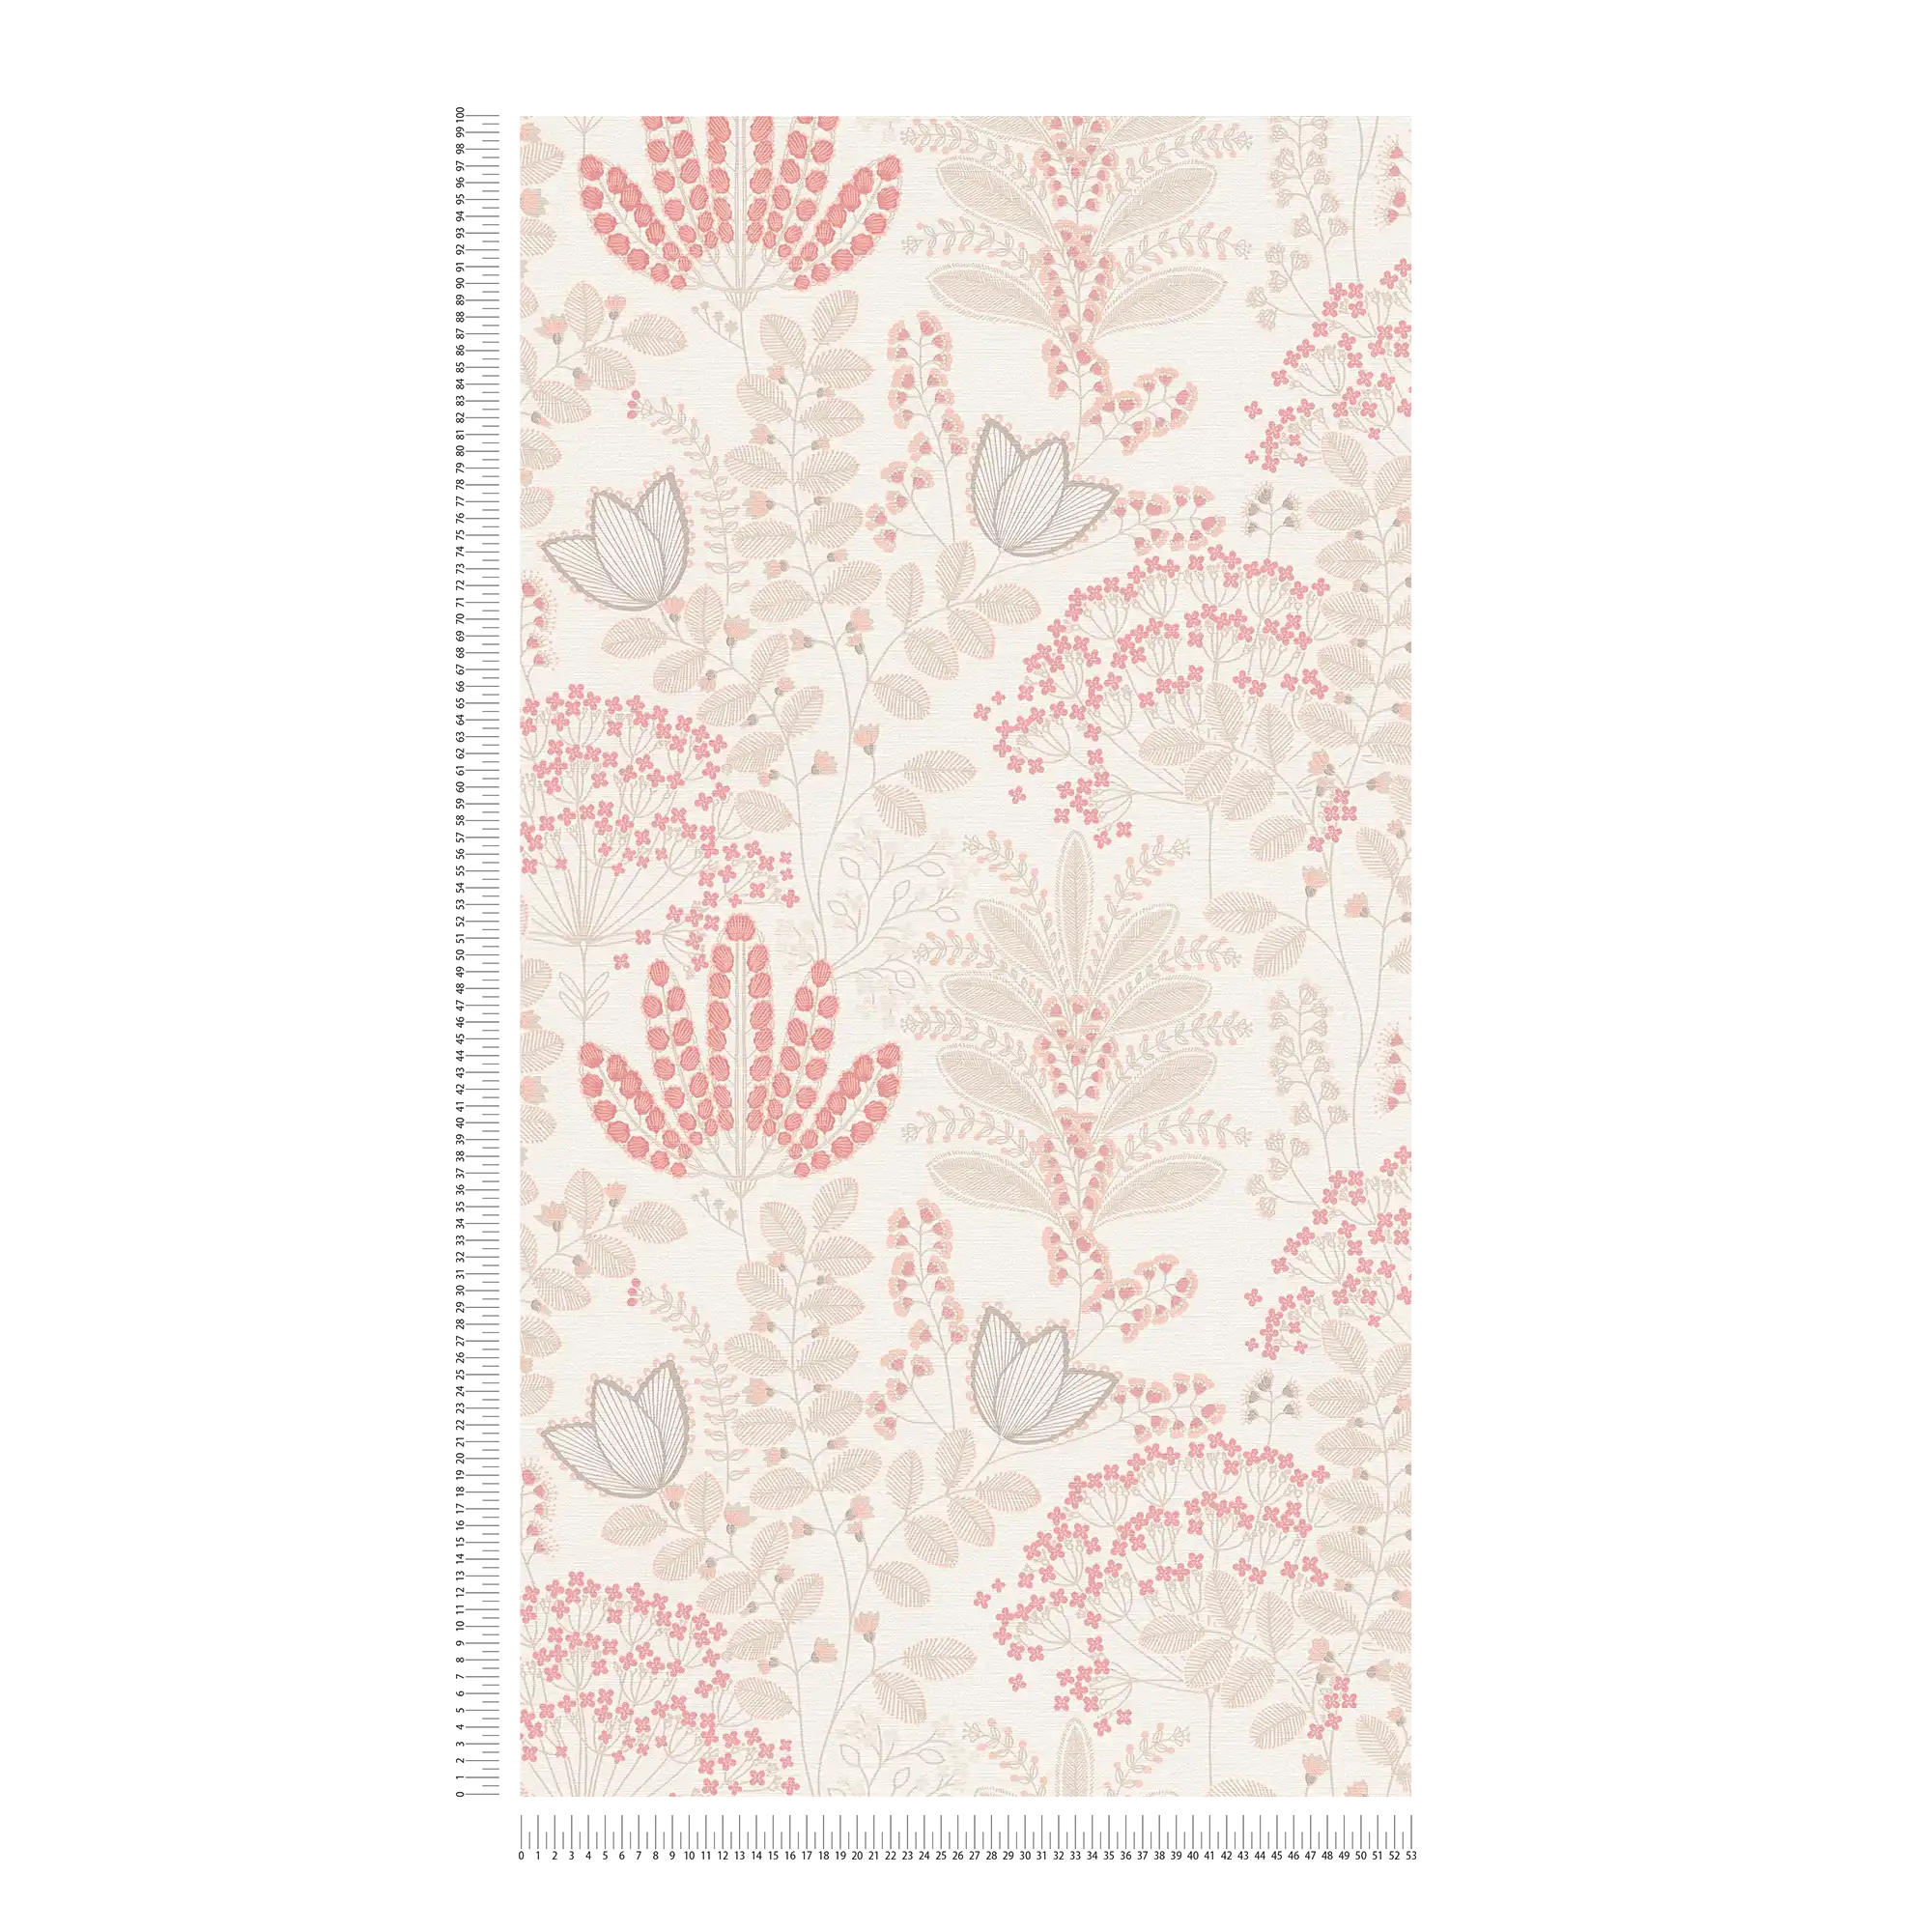             Florale Tapete mit Blättern im Retro-Design leicht strukturiert, matt – Weiß, Taupe, Rosa
        